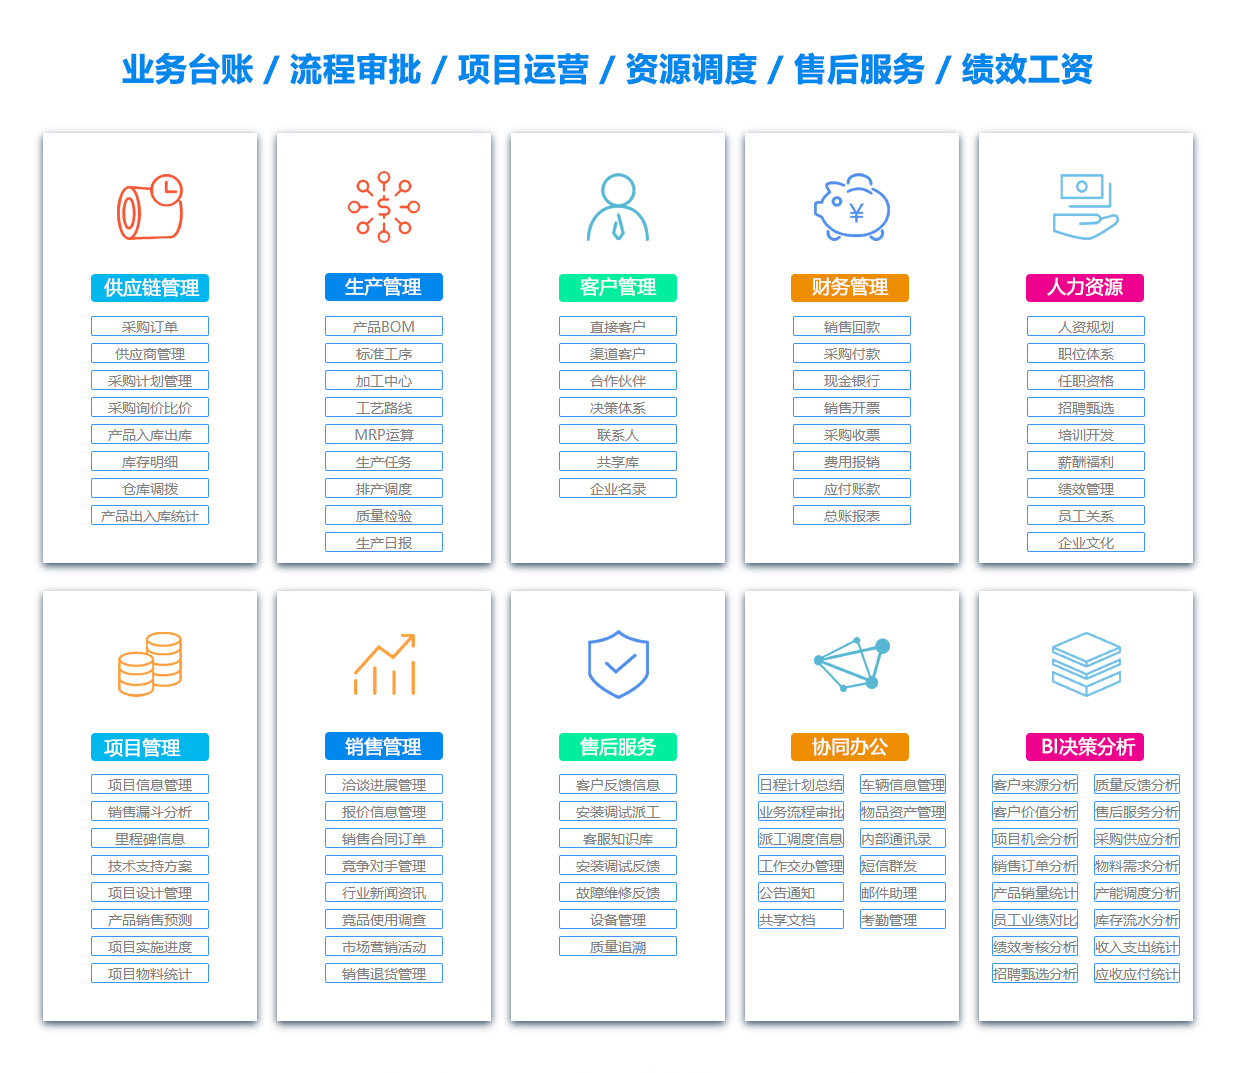 锦州SCM:供应链管理系统